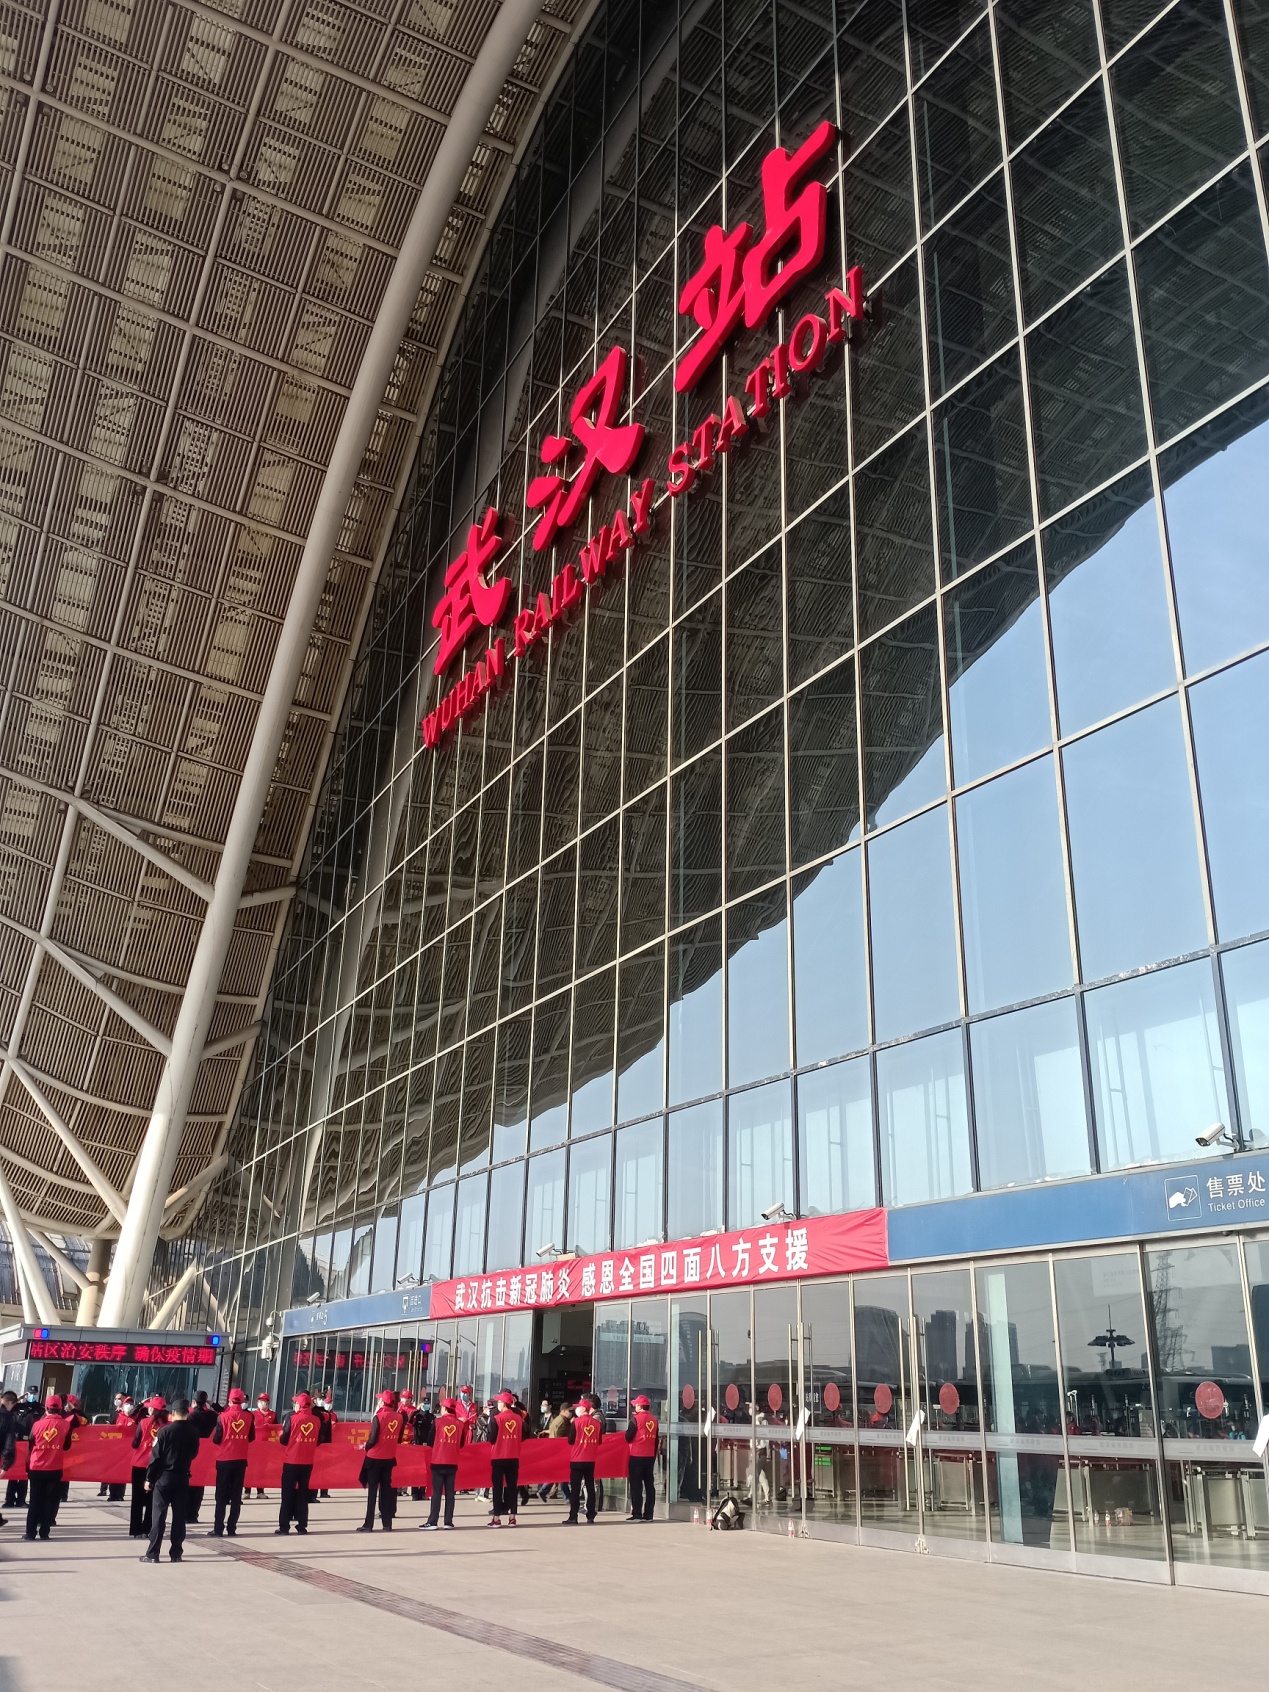 17点,车辆到达武汉车站,武汉站入口处两侧站满了身穿红色马甲的志愿者